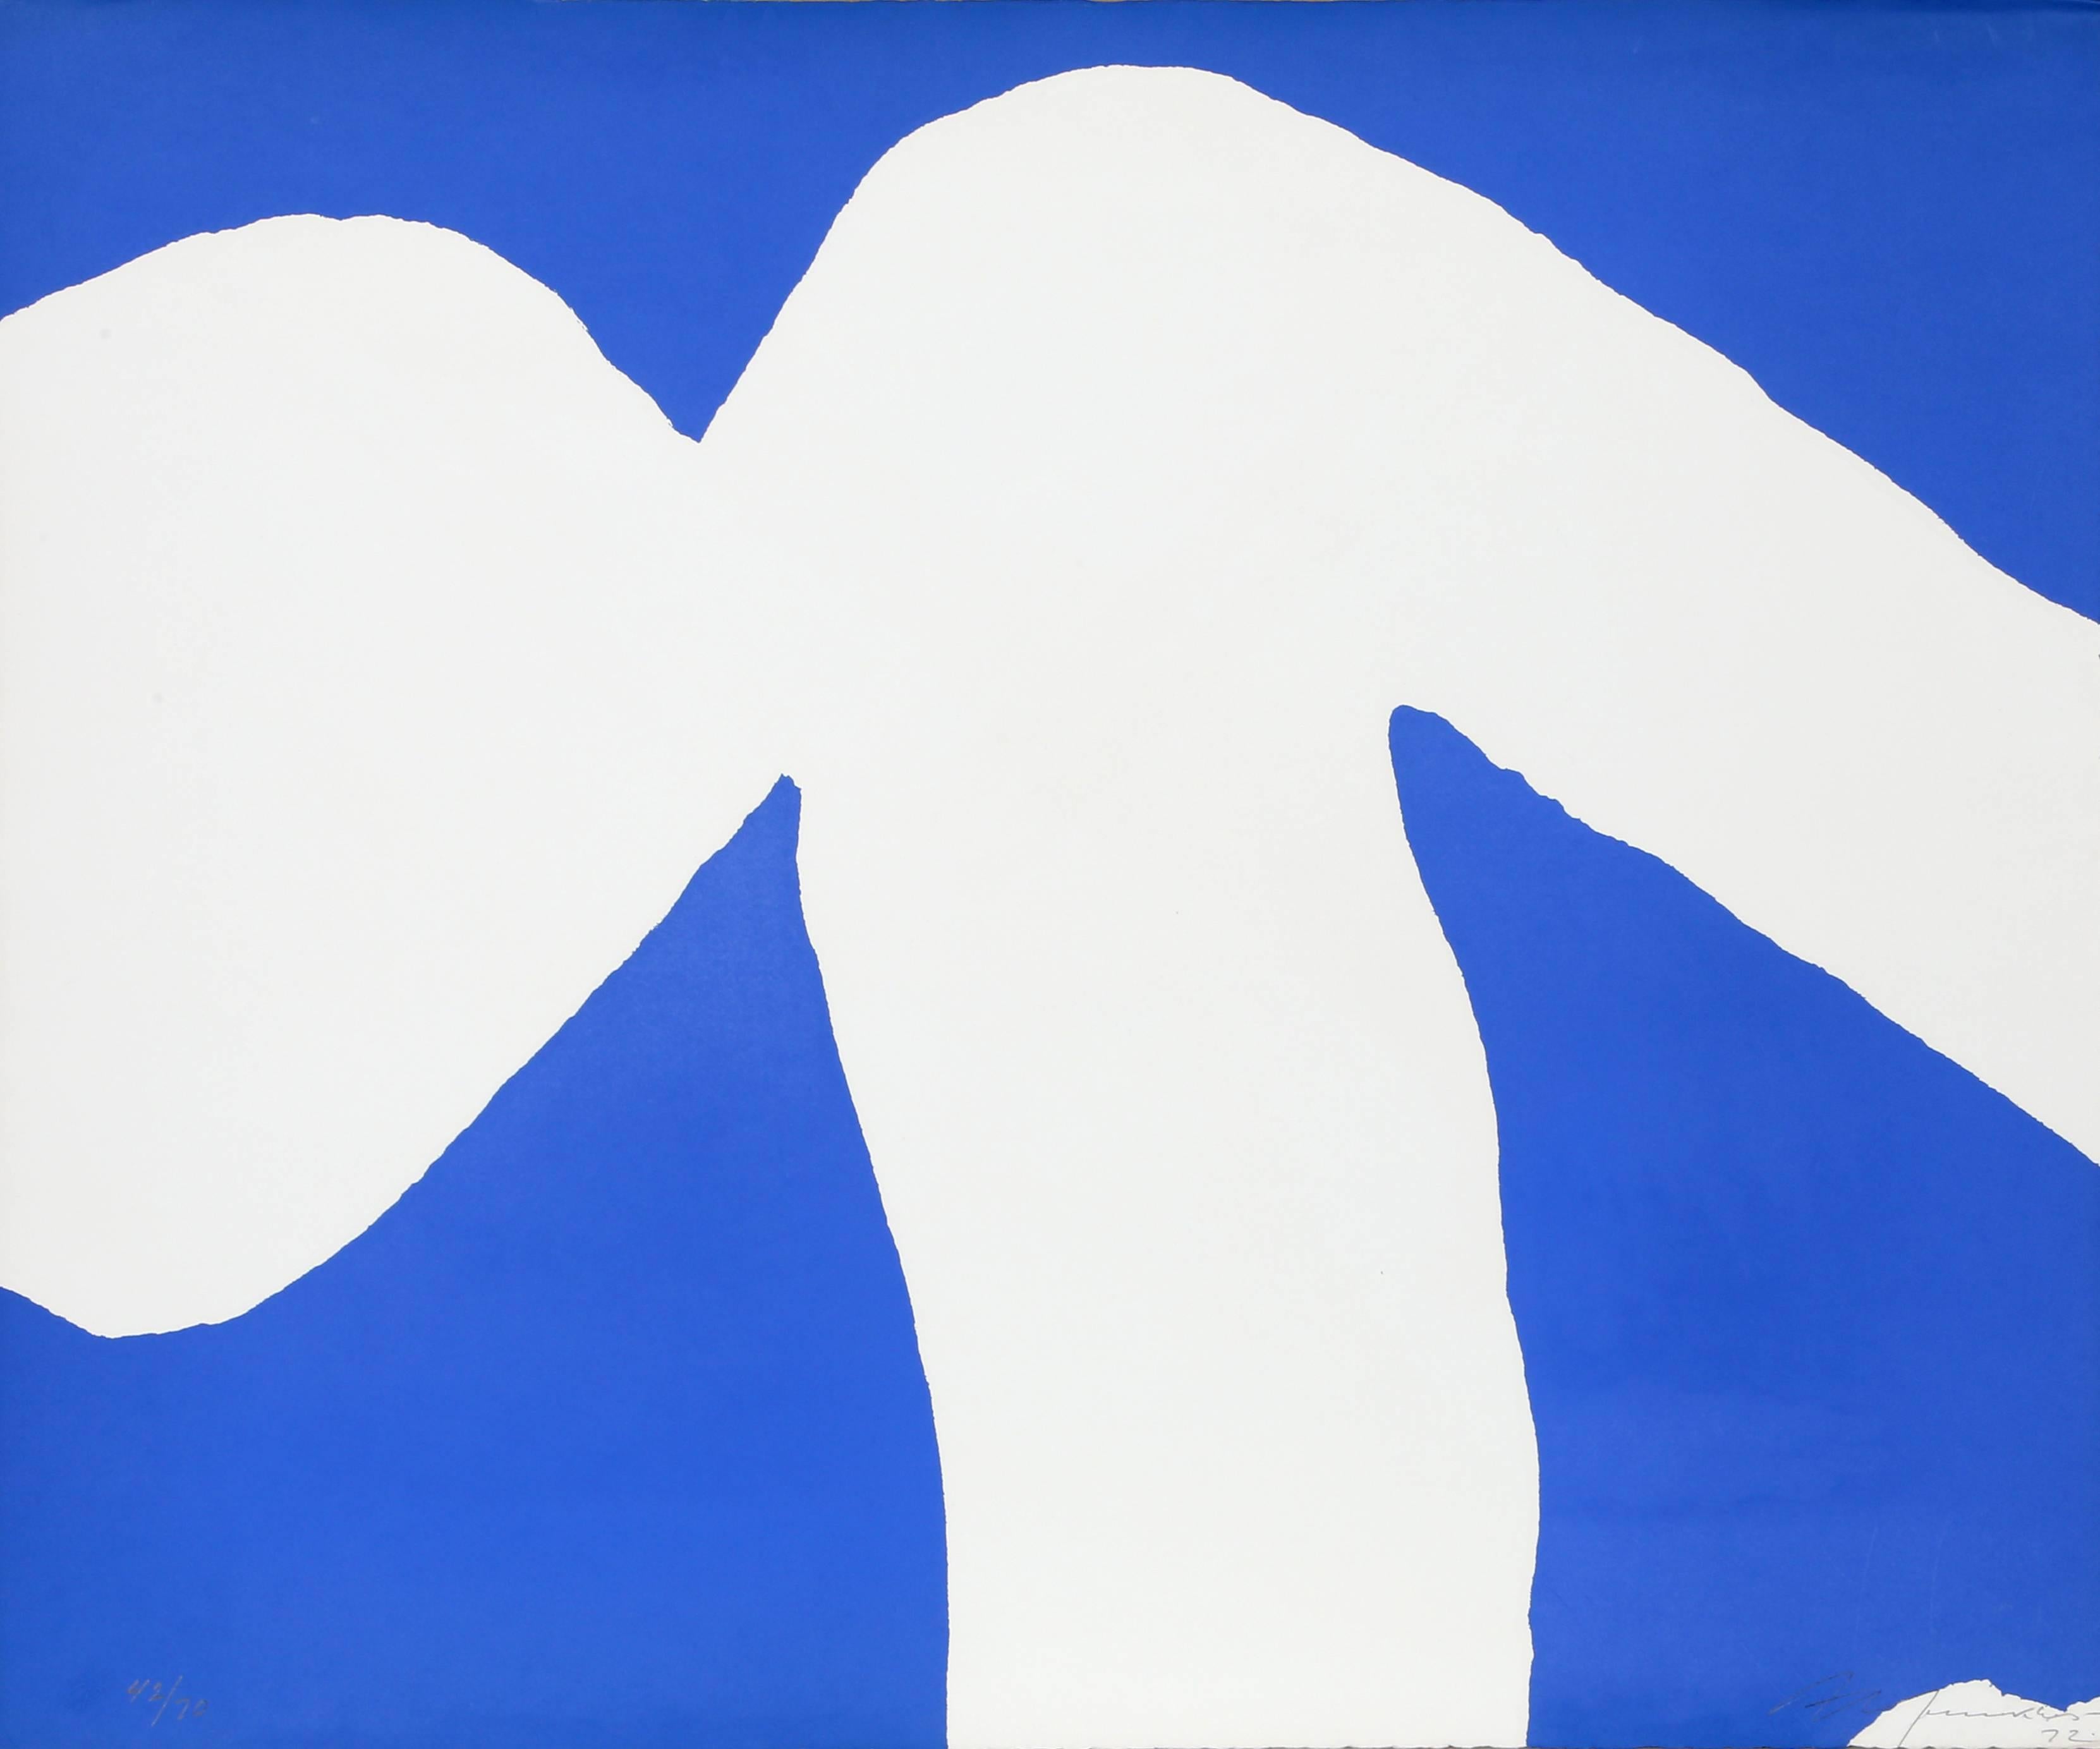 Artiste : Adja Yunkers, Lettonie/Amérique (1900 - 1983)
Titre : sans titre
Année : 1972
Médium : Sérigraphie avec gaufrage, signé et numéroté au crayon
Edition : 70
Taille : 24.75 x 30 in. (62,87 x 76,2 cm)